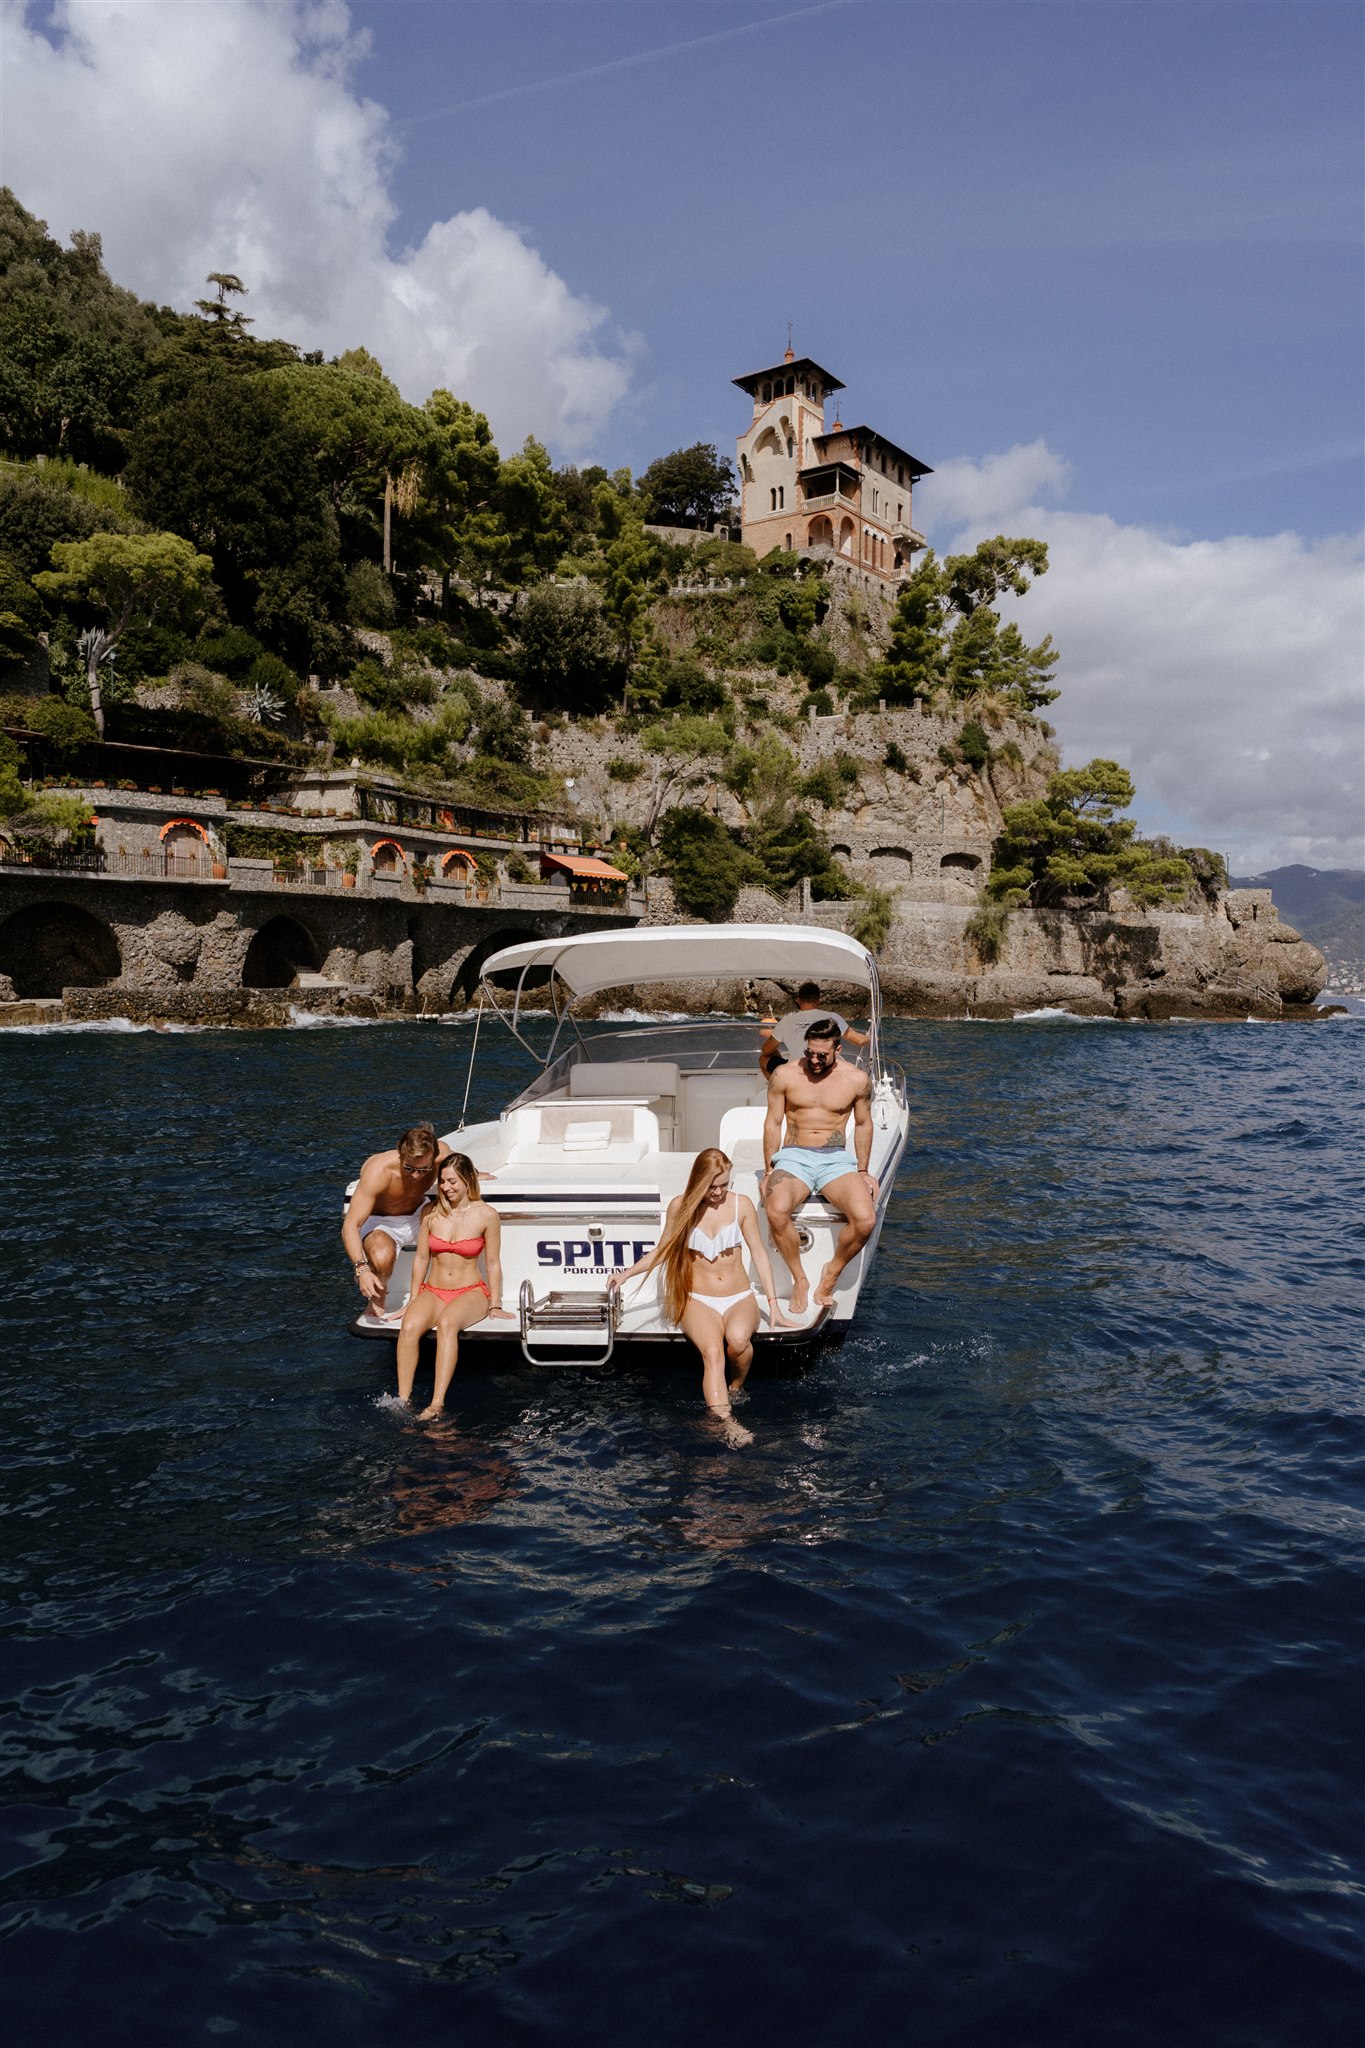 Cesare Charter Portofino - Servizi tour, charter e transfer marittimi